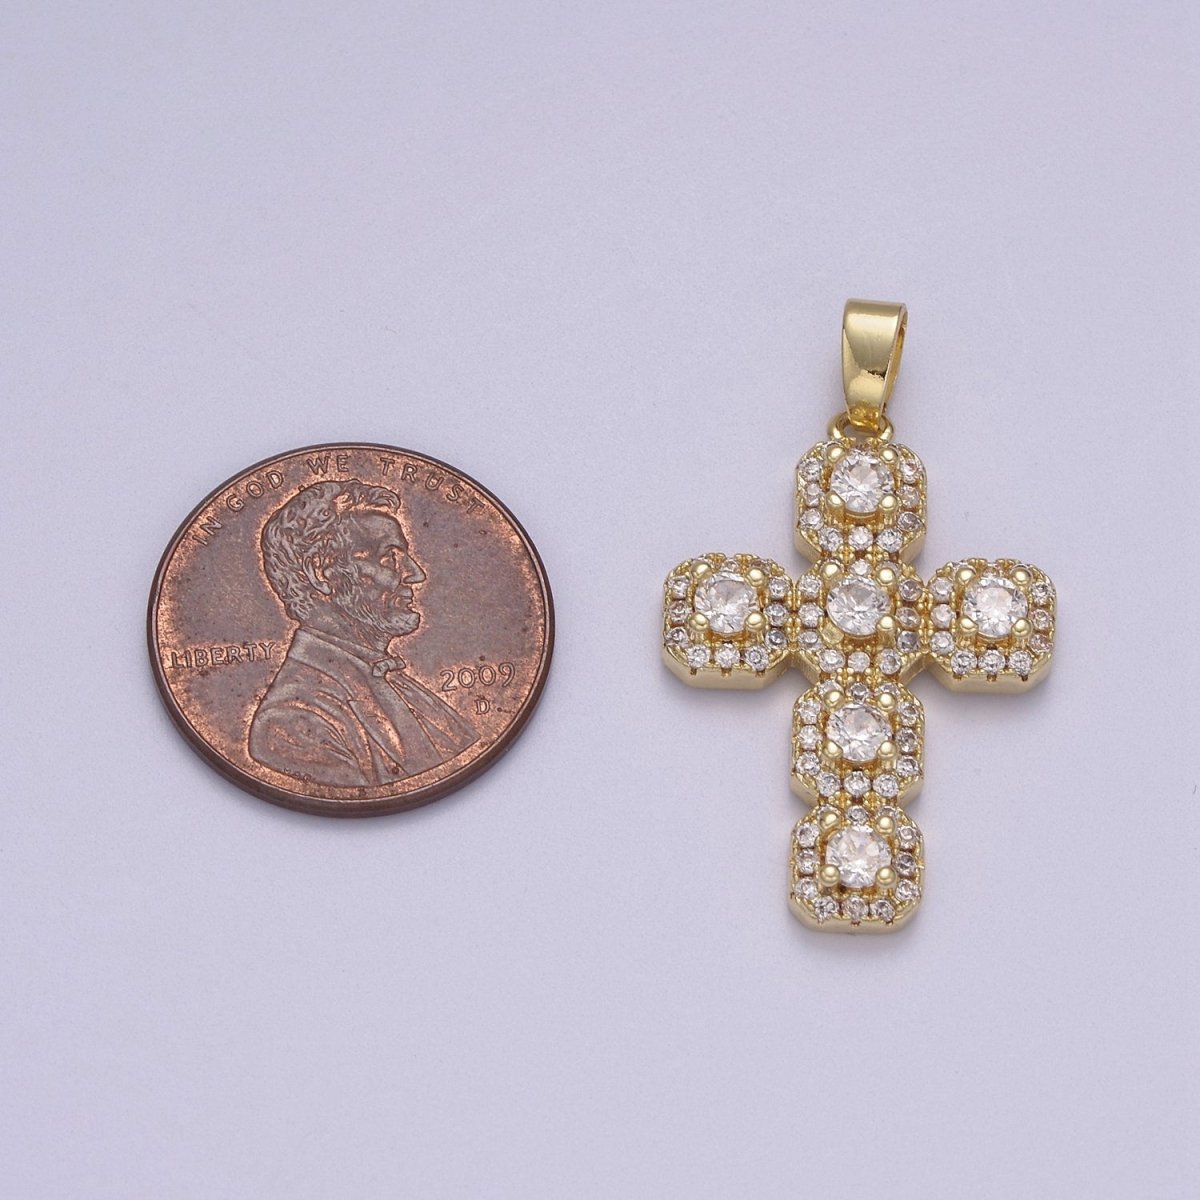 Dainty Gold Cross Pendant CZ Cross Charm for Minimalist Jewelry N-604 - DLUXCA